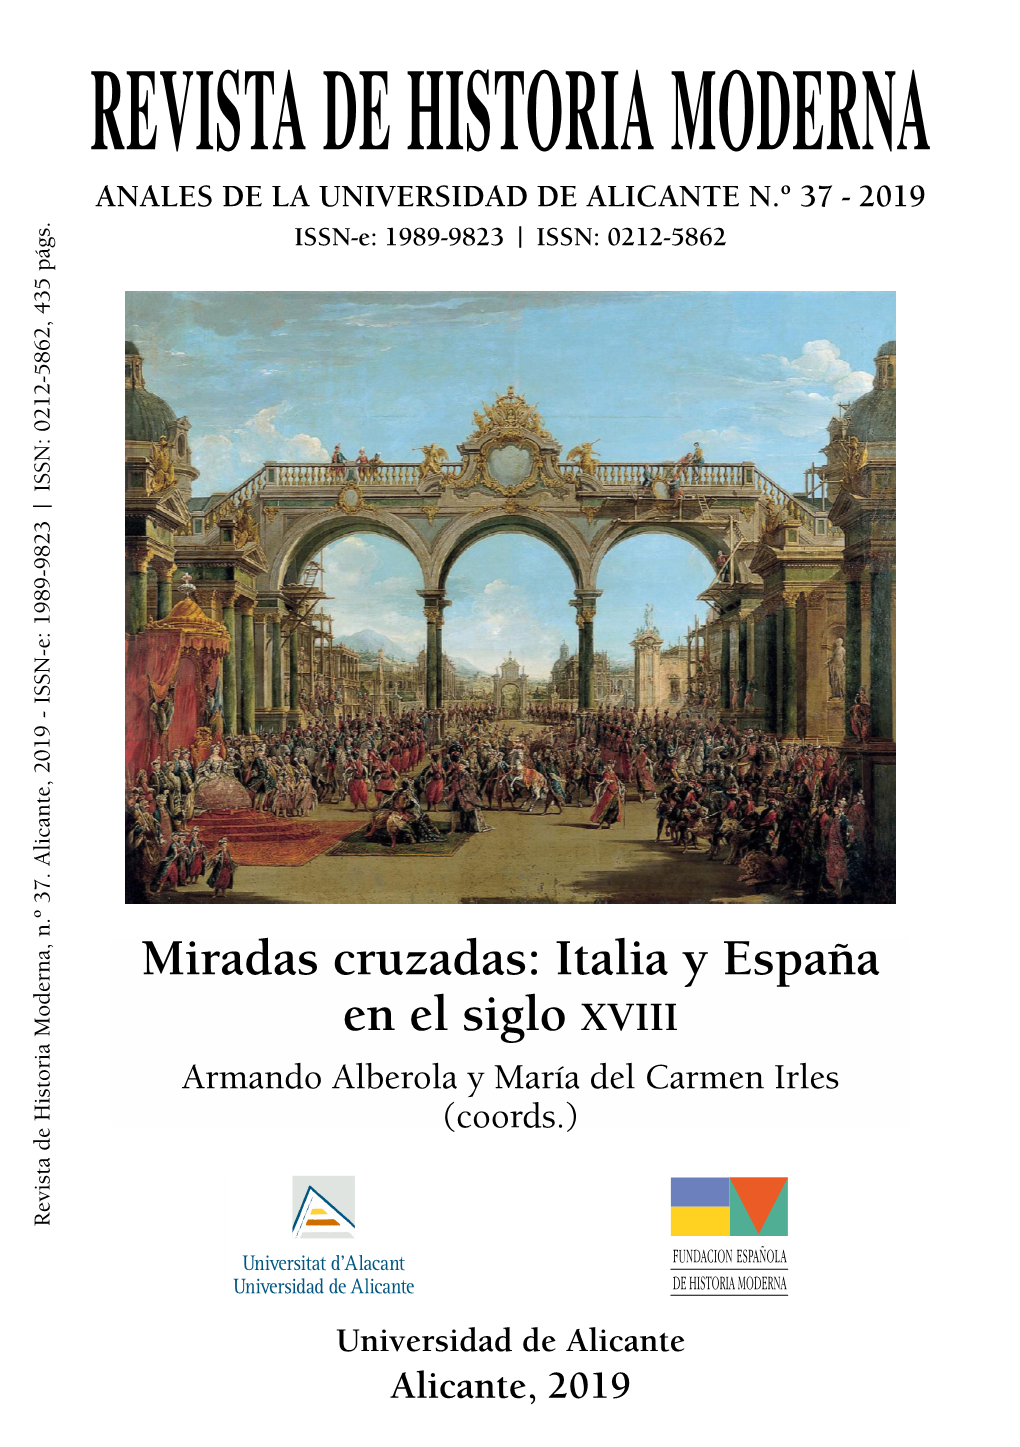 Miradas Cruzadas: Italia Y España En El Siglo Xviii Armando Alberola Y María Del Carmen Irles (Coords.) Revista De Historia Moderna